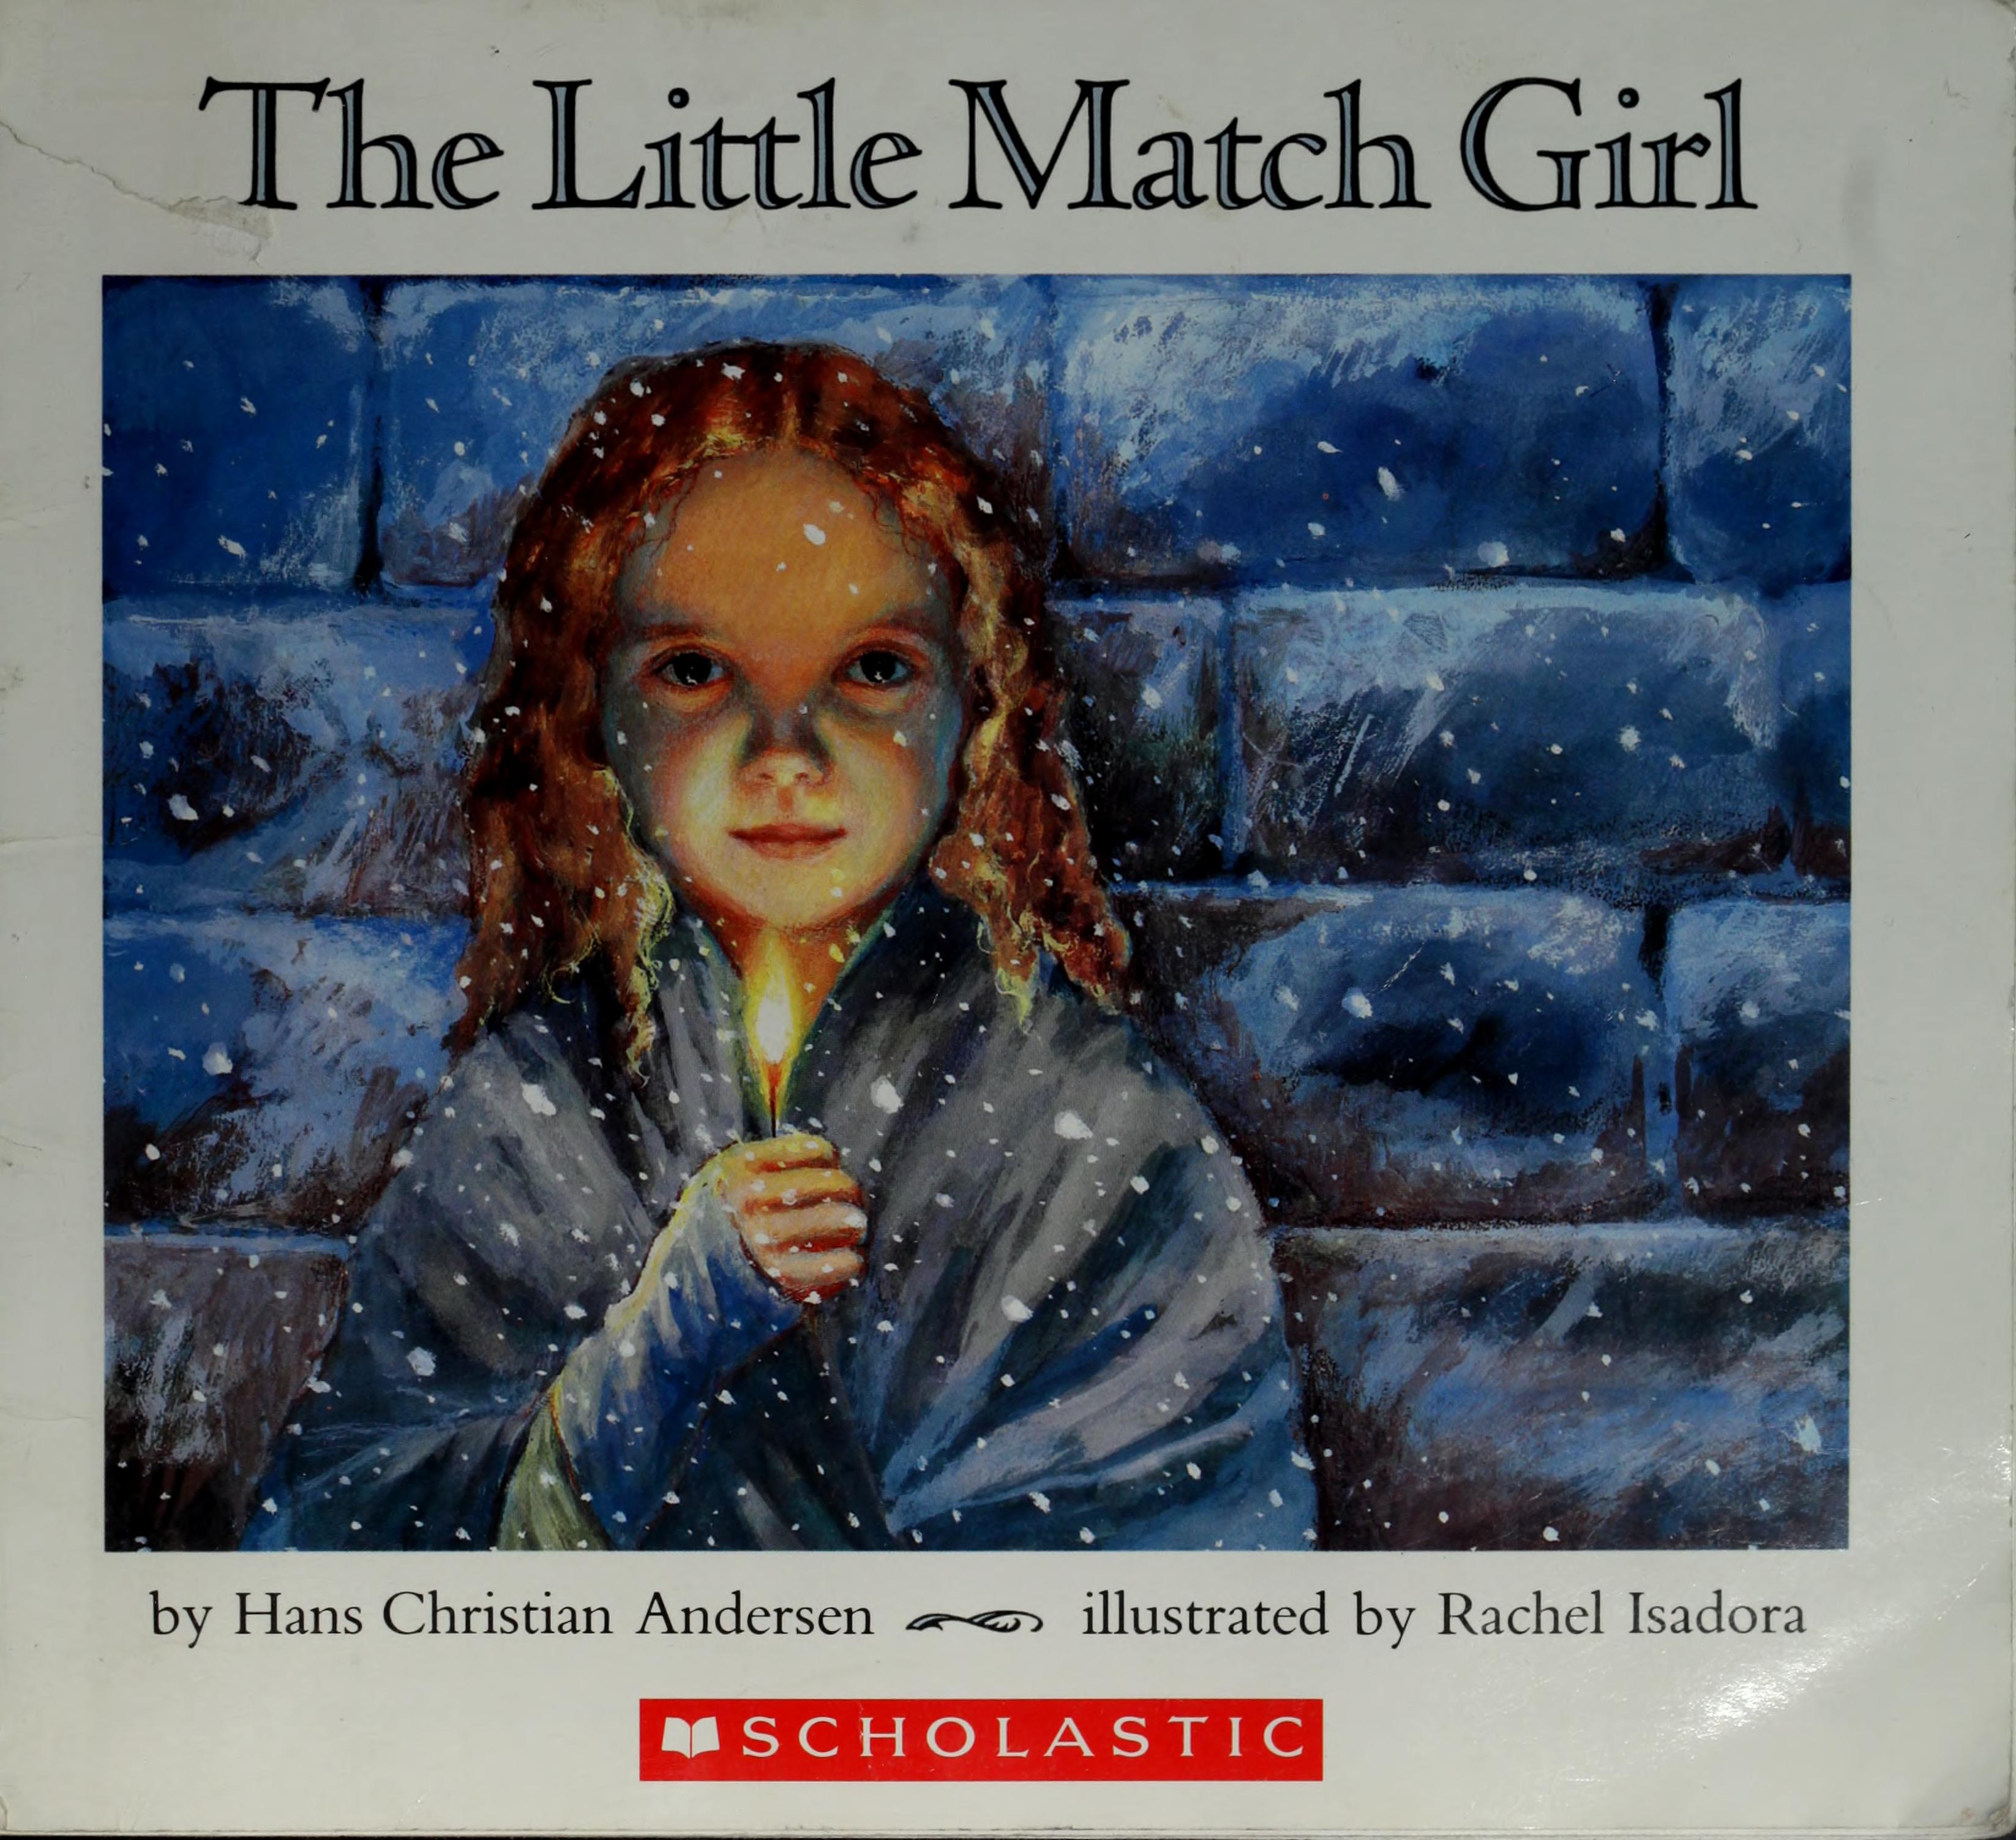 The little match girl